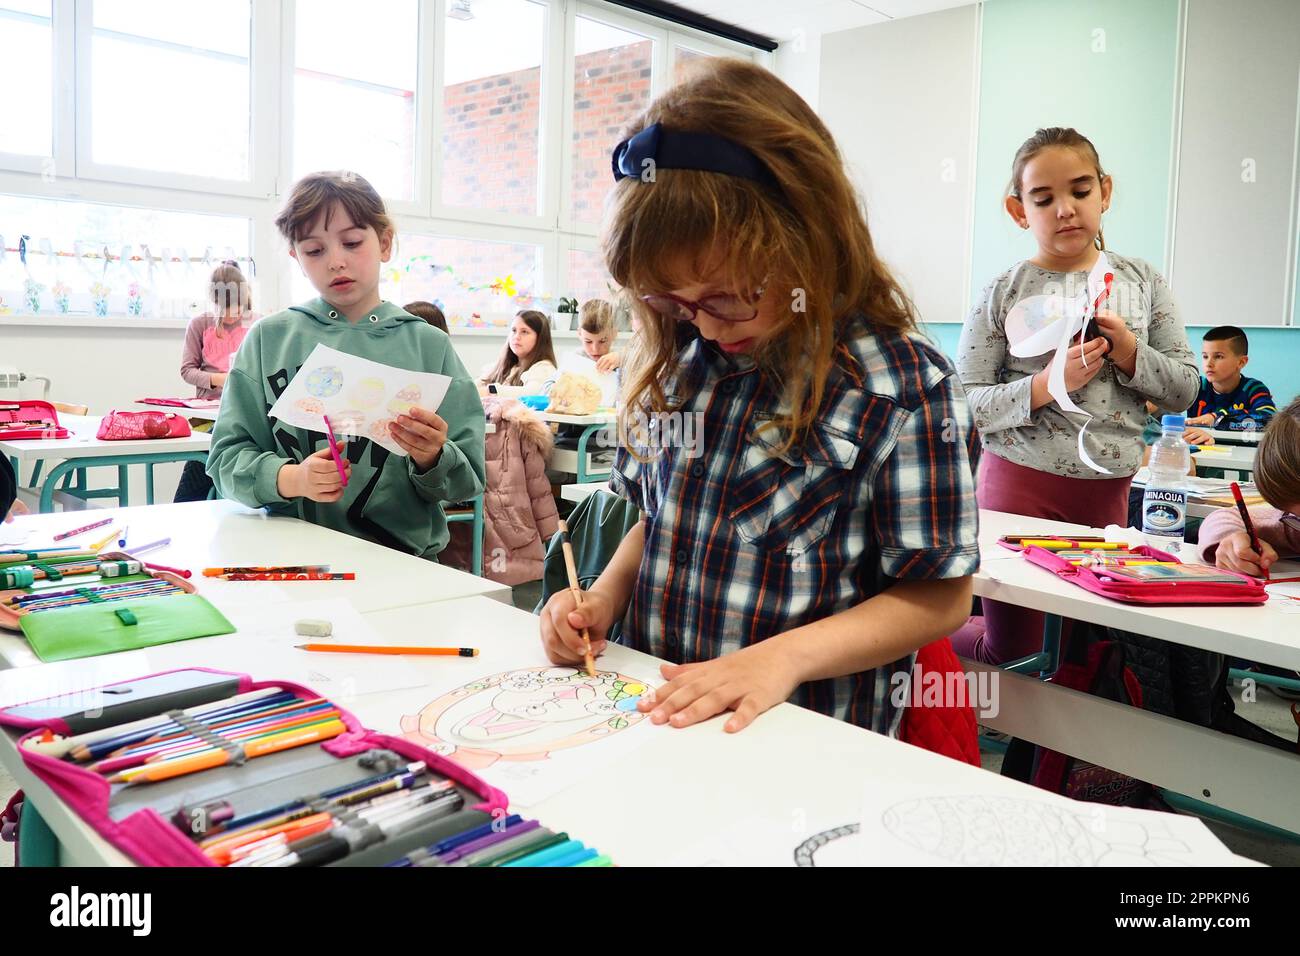 Kinder im Alter von 9-10 Jahren, Jungen und Mädchen, machen hausgemachtes Kunsthandwerk beim Unterricht. Moderne Bildungsstandards, Entwicklung kreativer Fähigkeiten und Feinmotorik in der Schule 9. April 2022 Serbien Srem Stockfoto